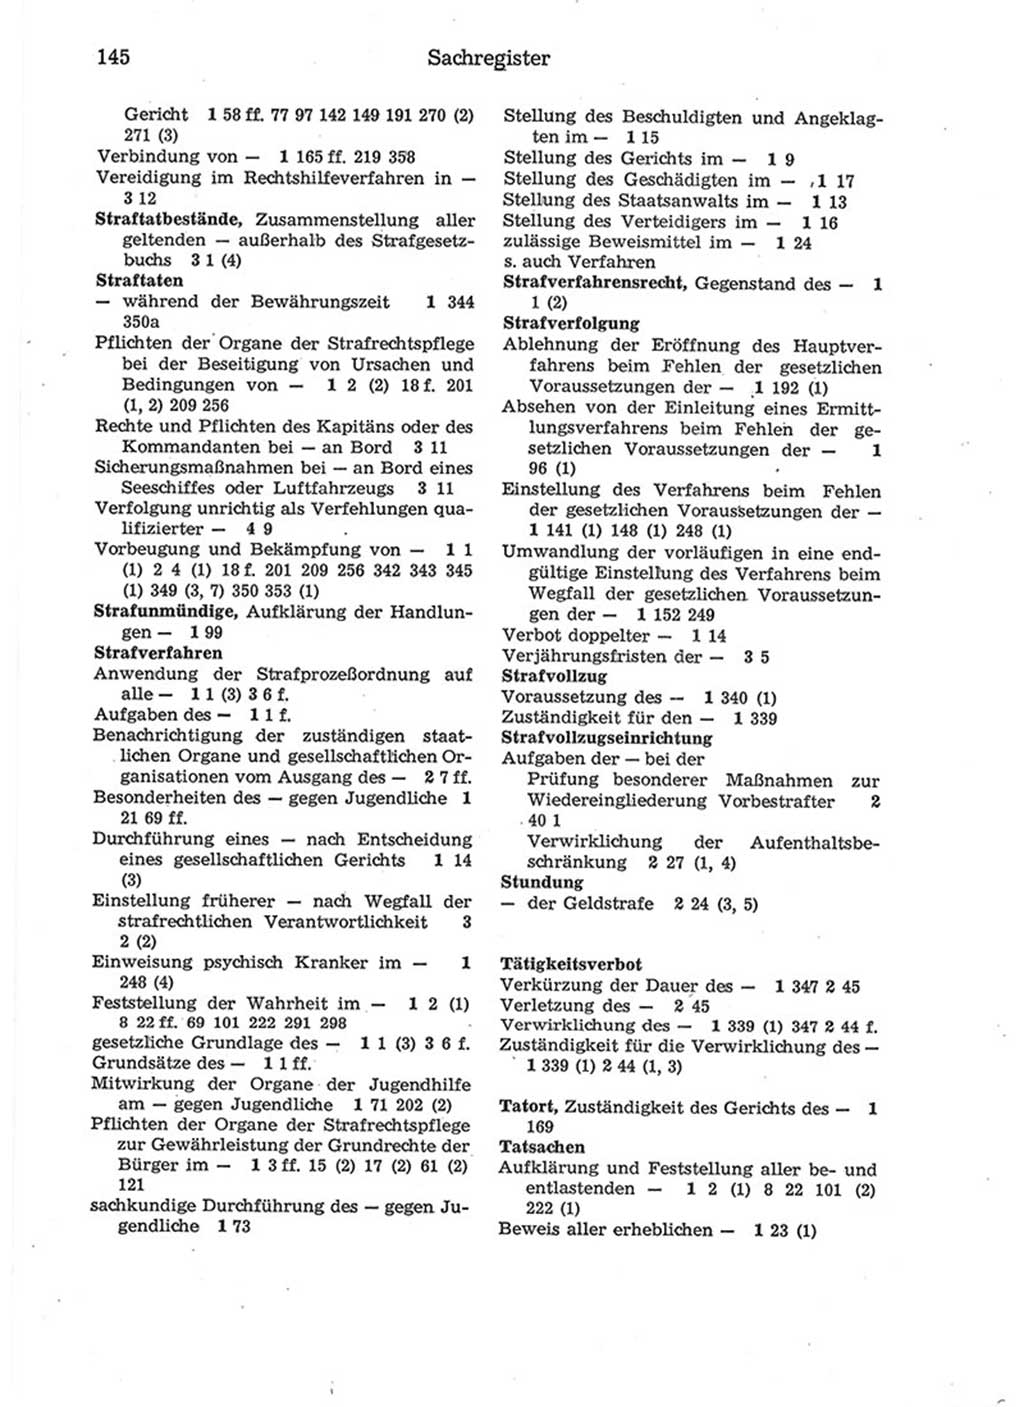 Strafprozeßordnung (StPO) der Deutschen Demokratischen Republik (DDR) 1975, Seite 145 (StPO DDR 1974, S. 145)